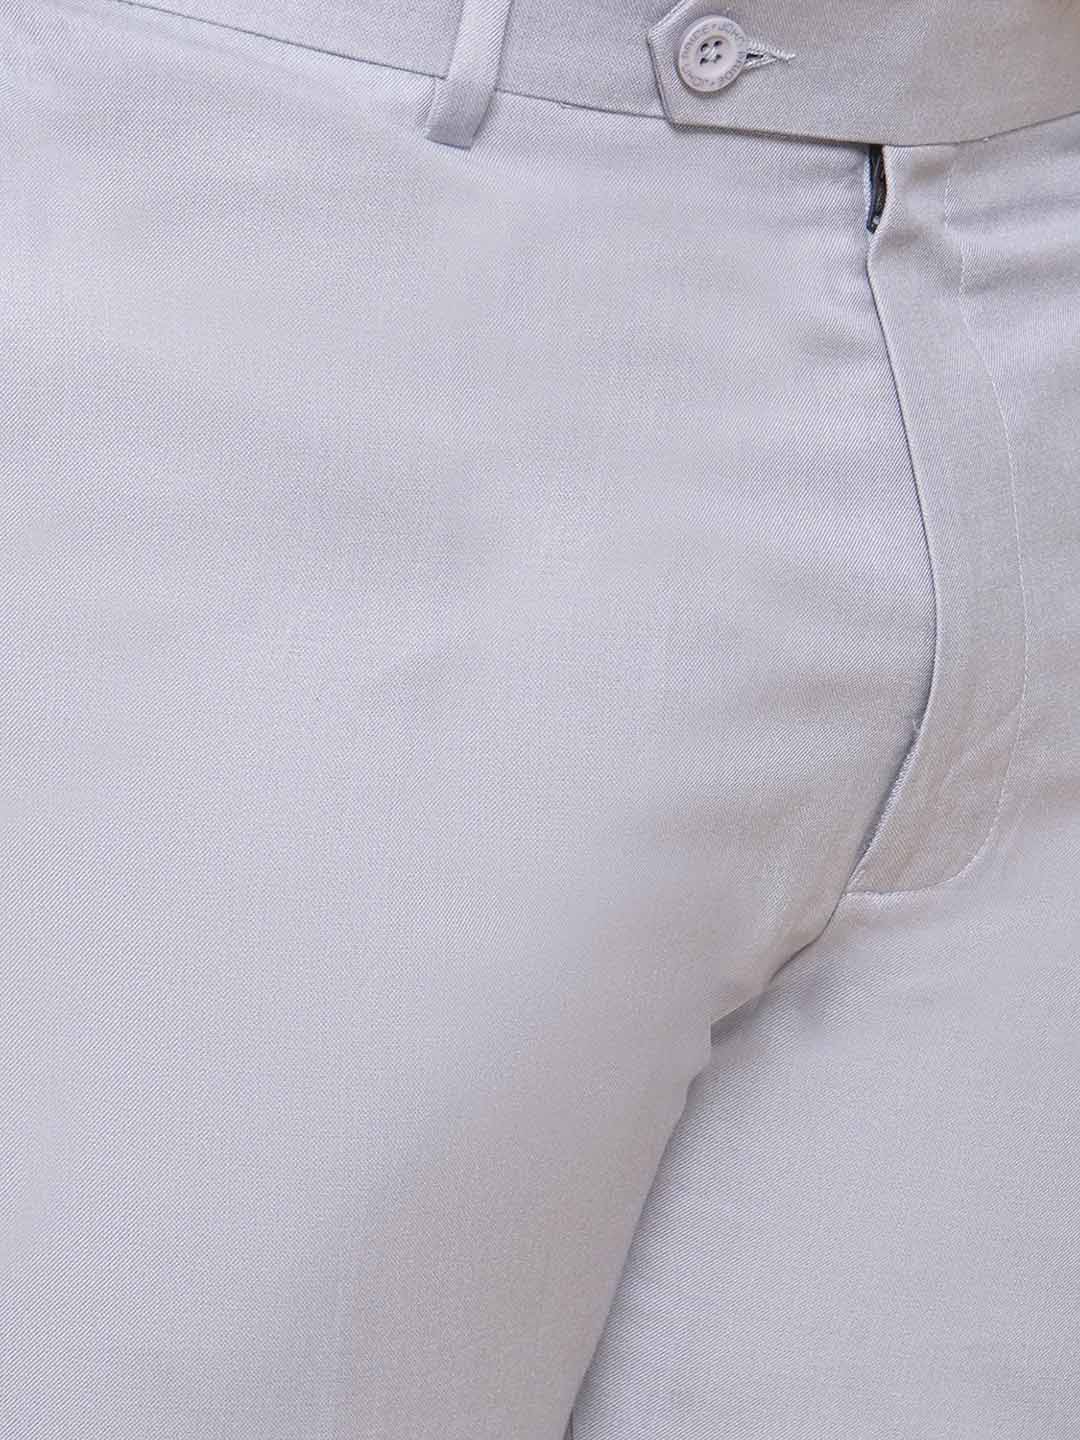 bottomwear/trousers/JPTR22010J/jptr22010j-2.jpg